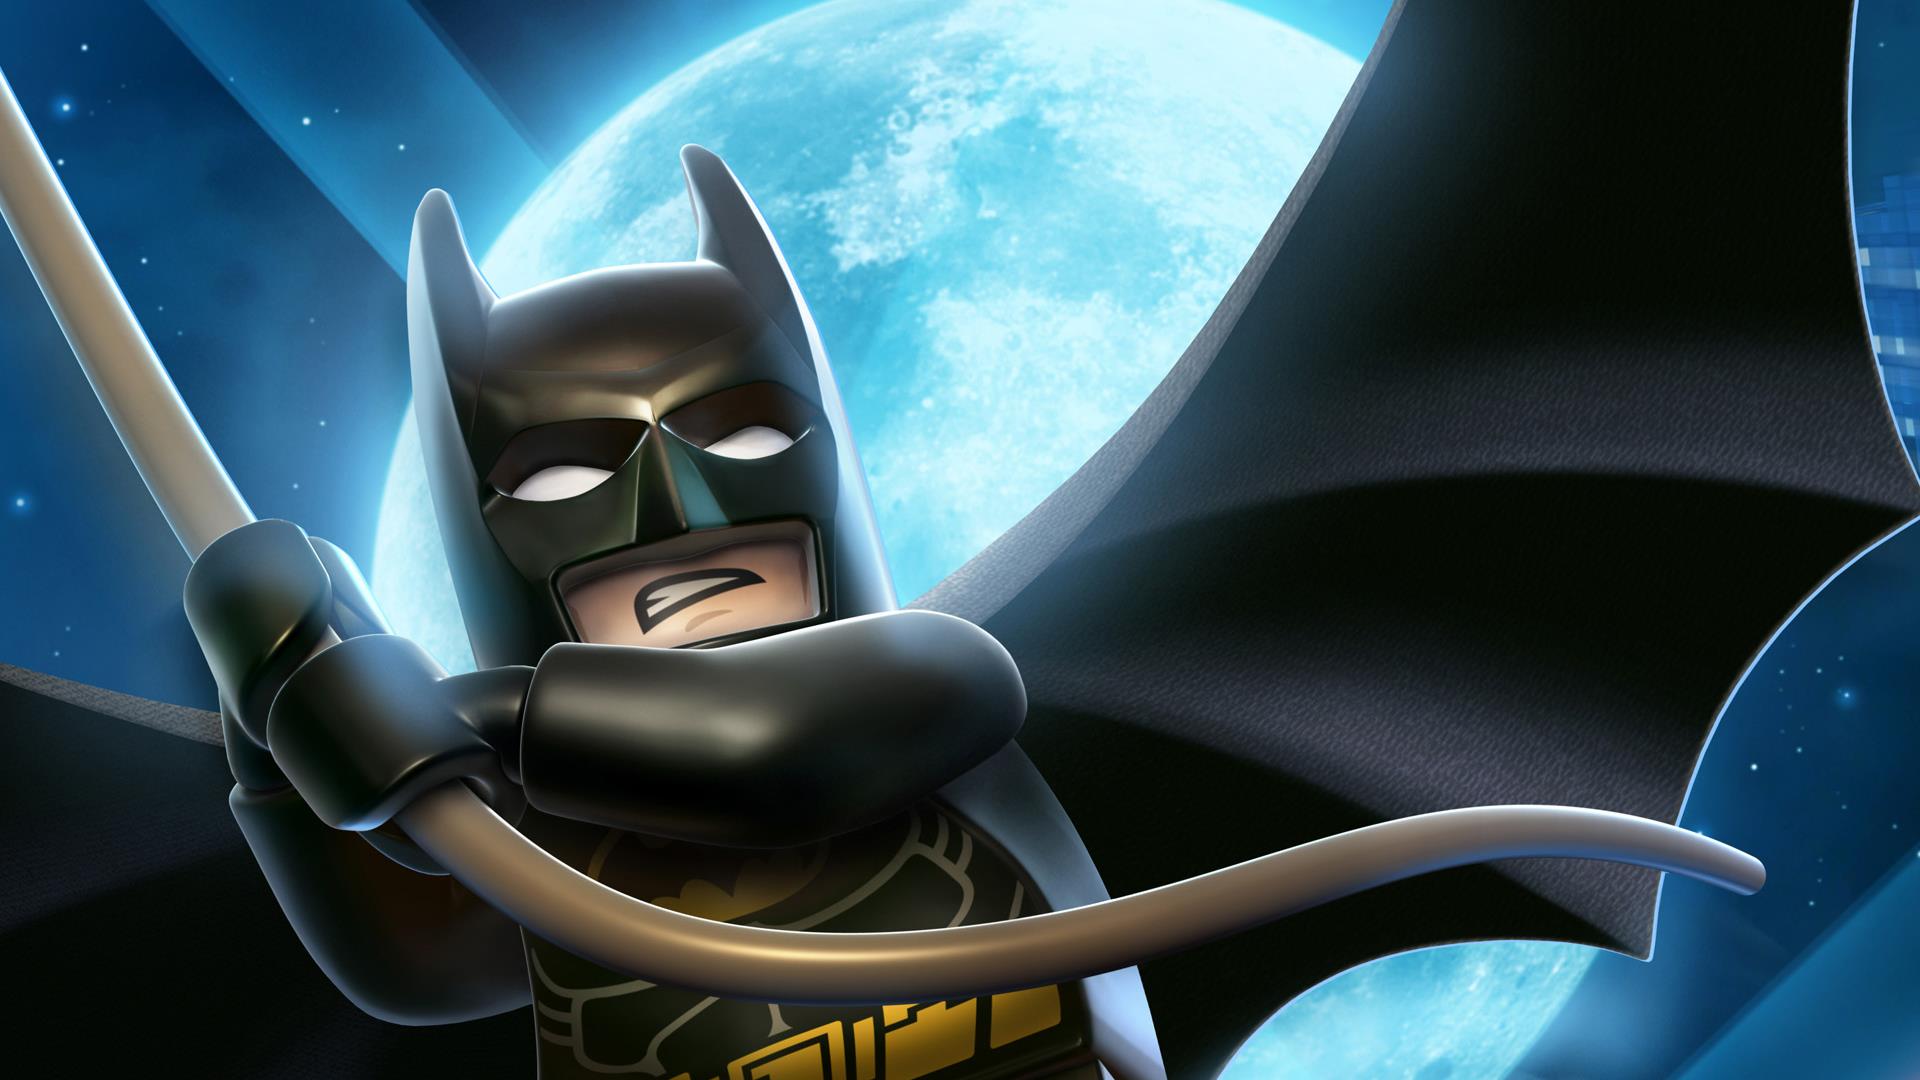 Lego Batman Pictures